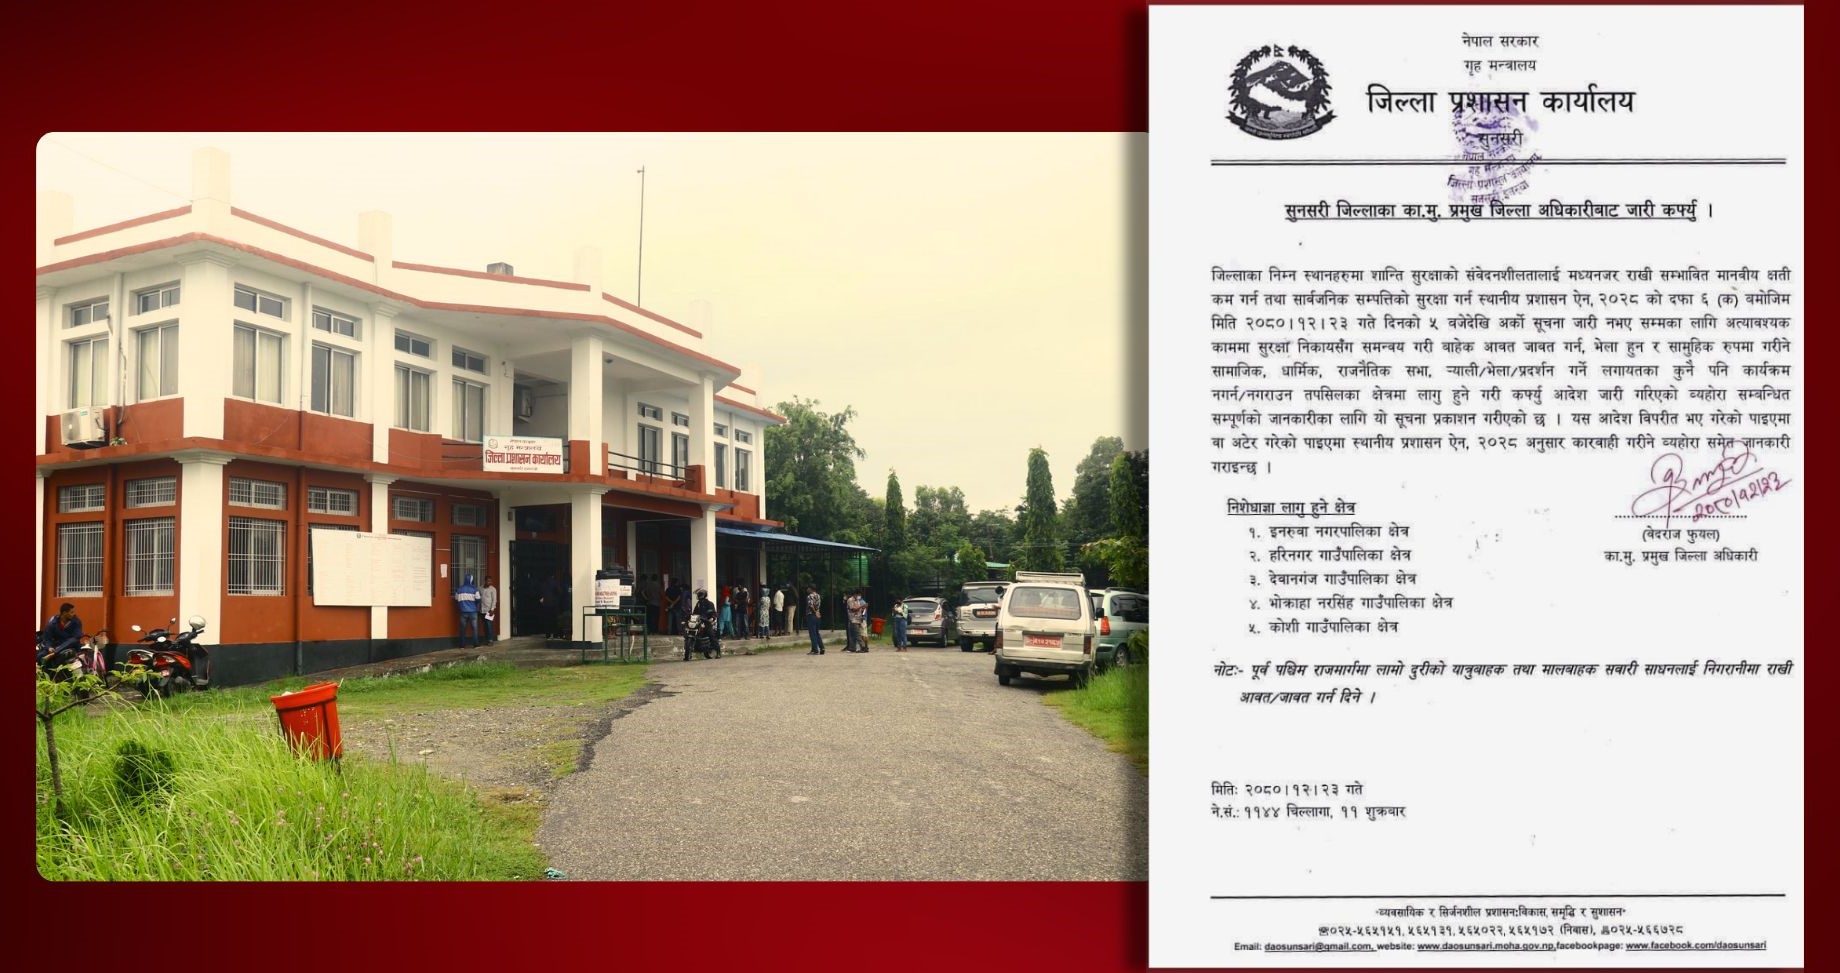 एसइई परीक्षा केन्द्रको झगडाले धार्मिक रङ्ग लिएपछि सुनसरीका पाँच पालिकामा कर्फ्यु